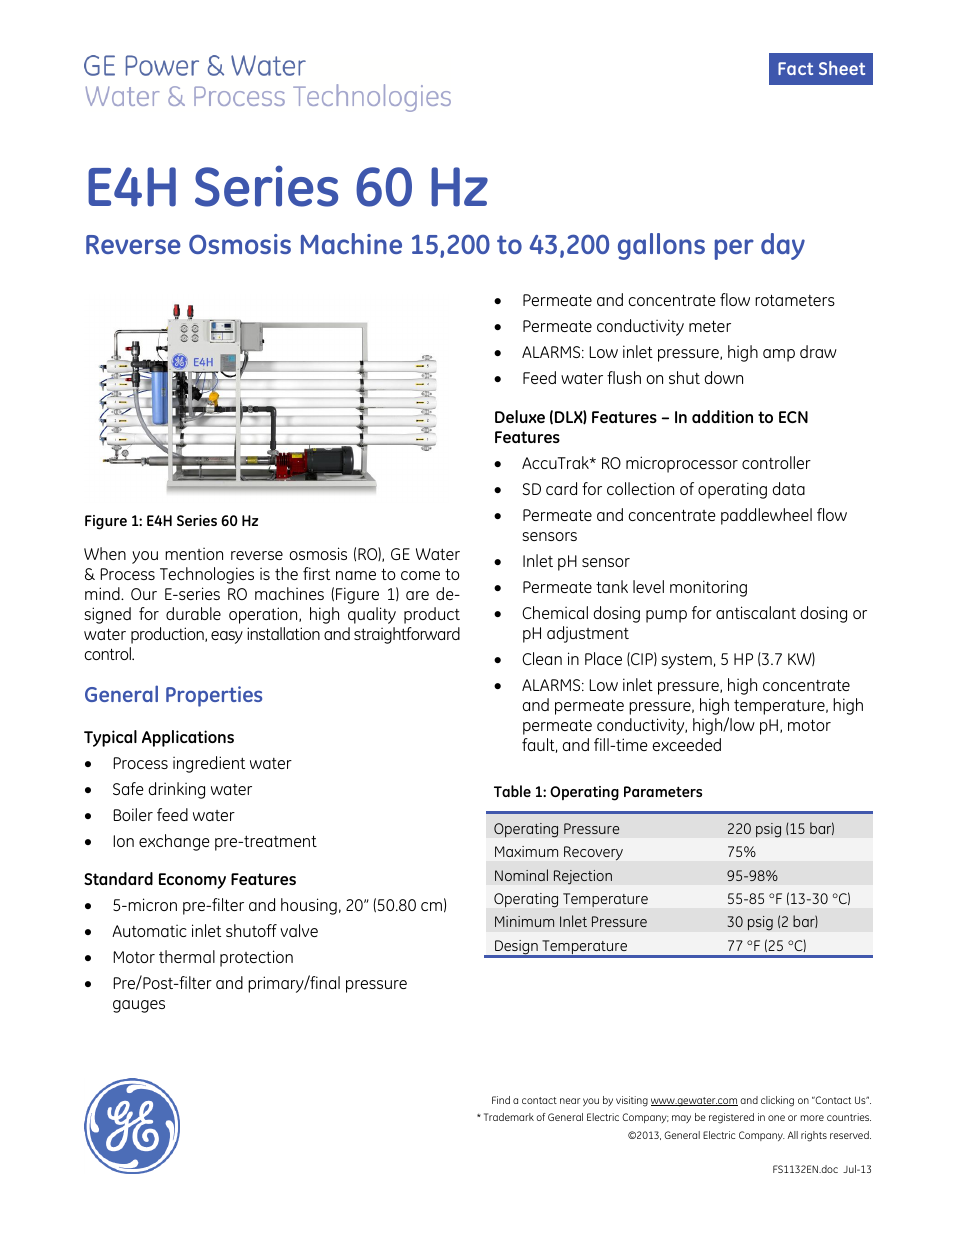 E-Series Reverse Osmosis - E4H 60 Hz